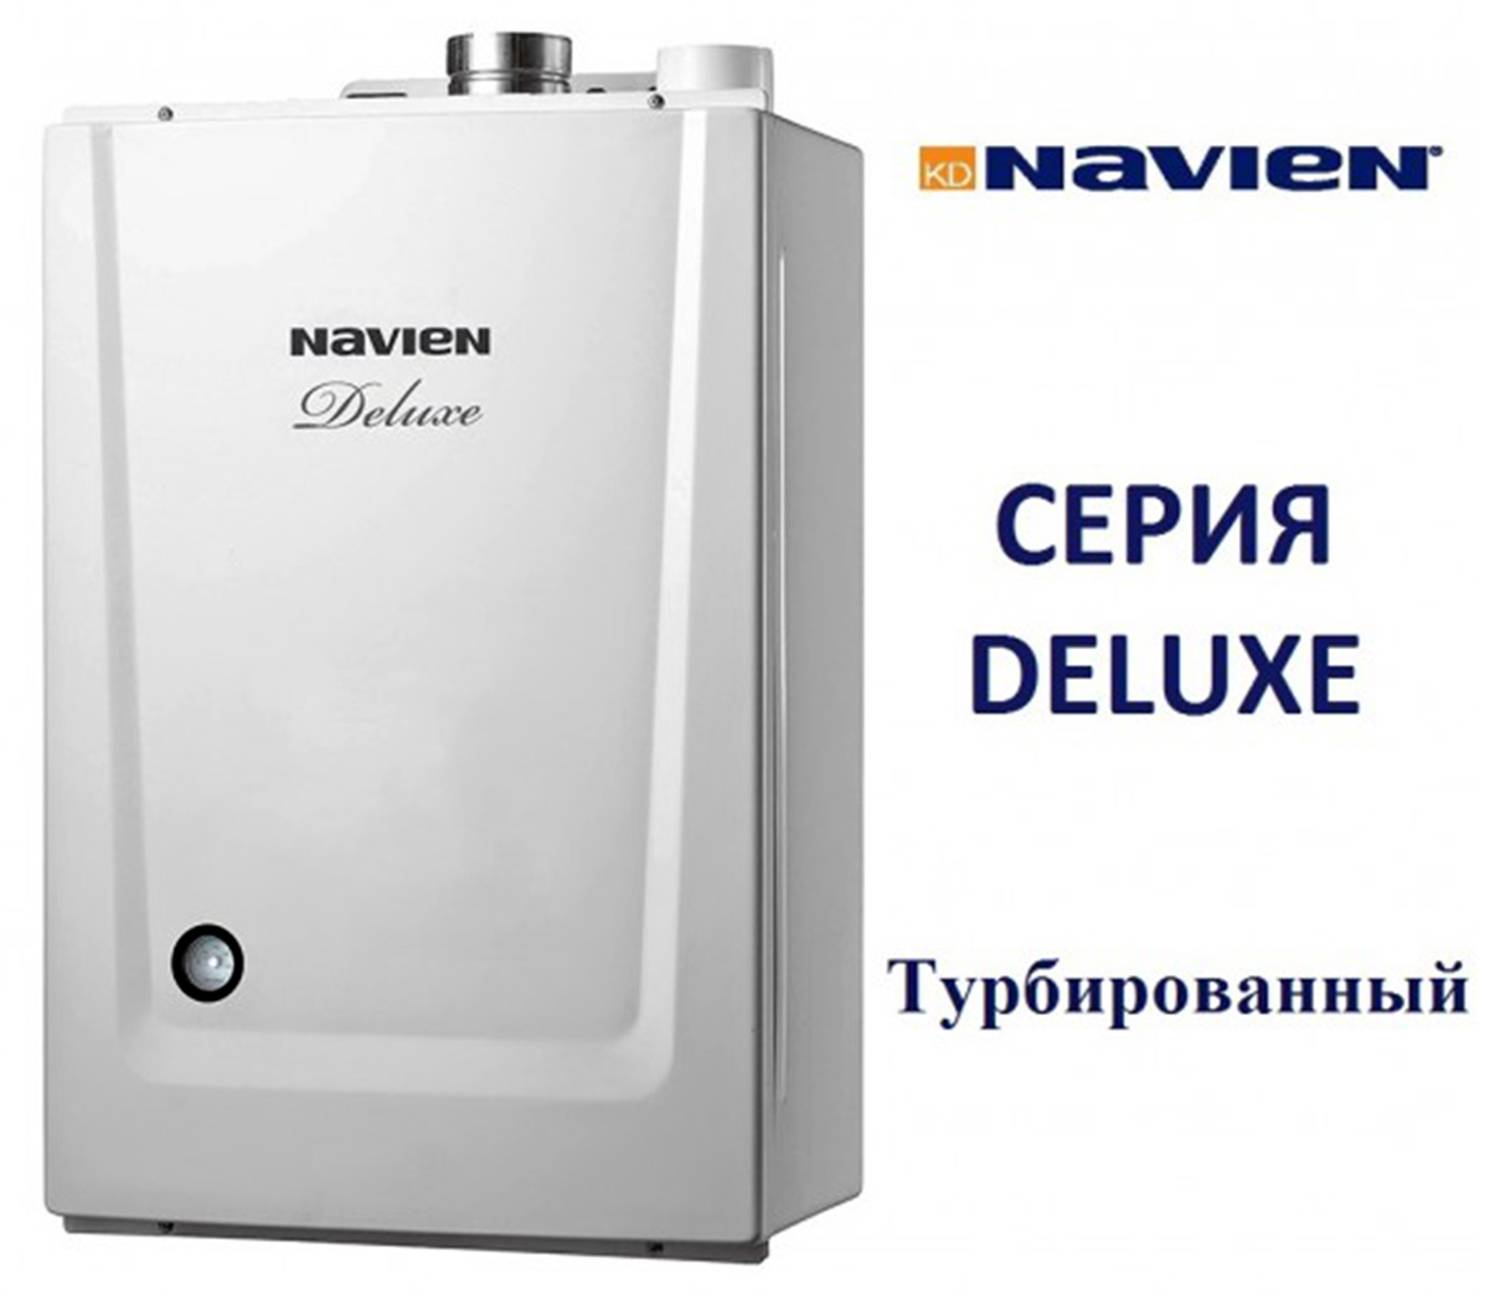 Отопительный газовый котел navien: устройство и технические характеристики настенного и напольного устройства + отзывы владельцев